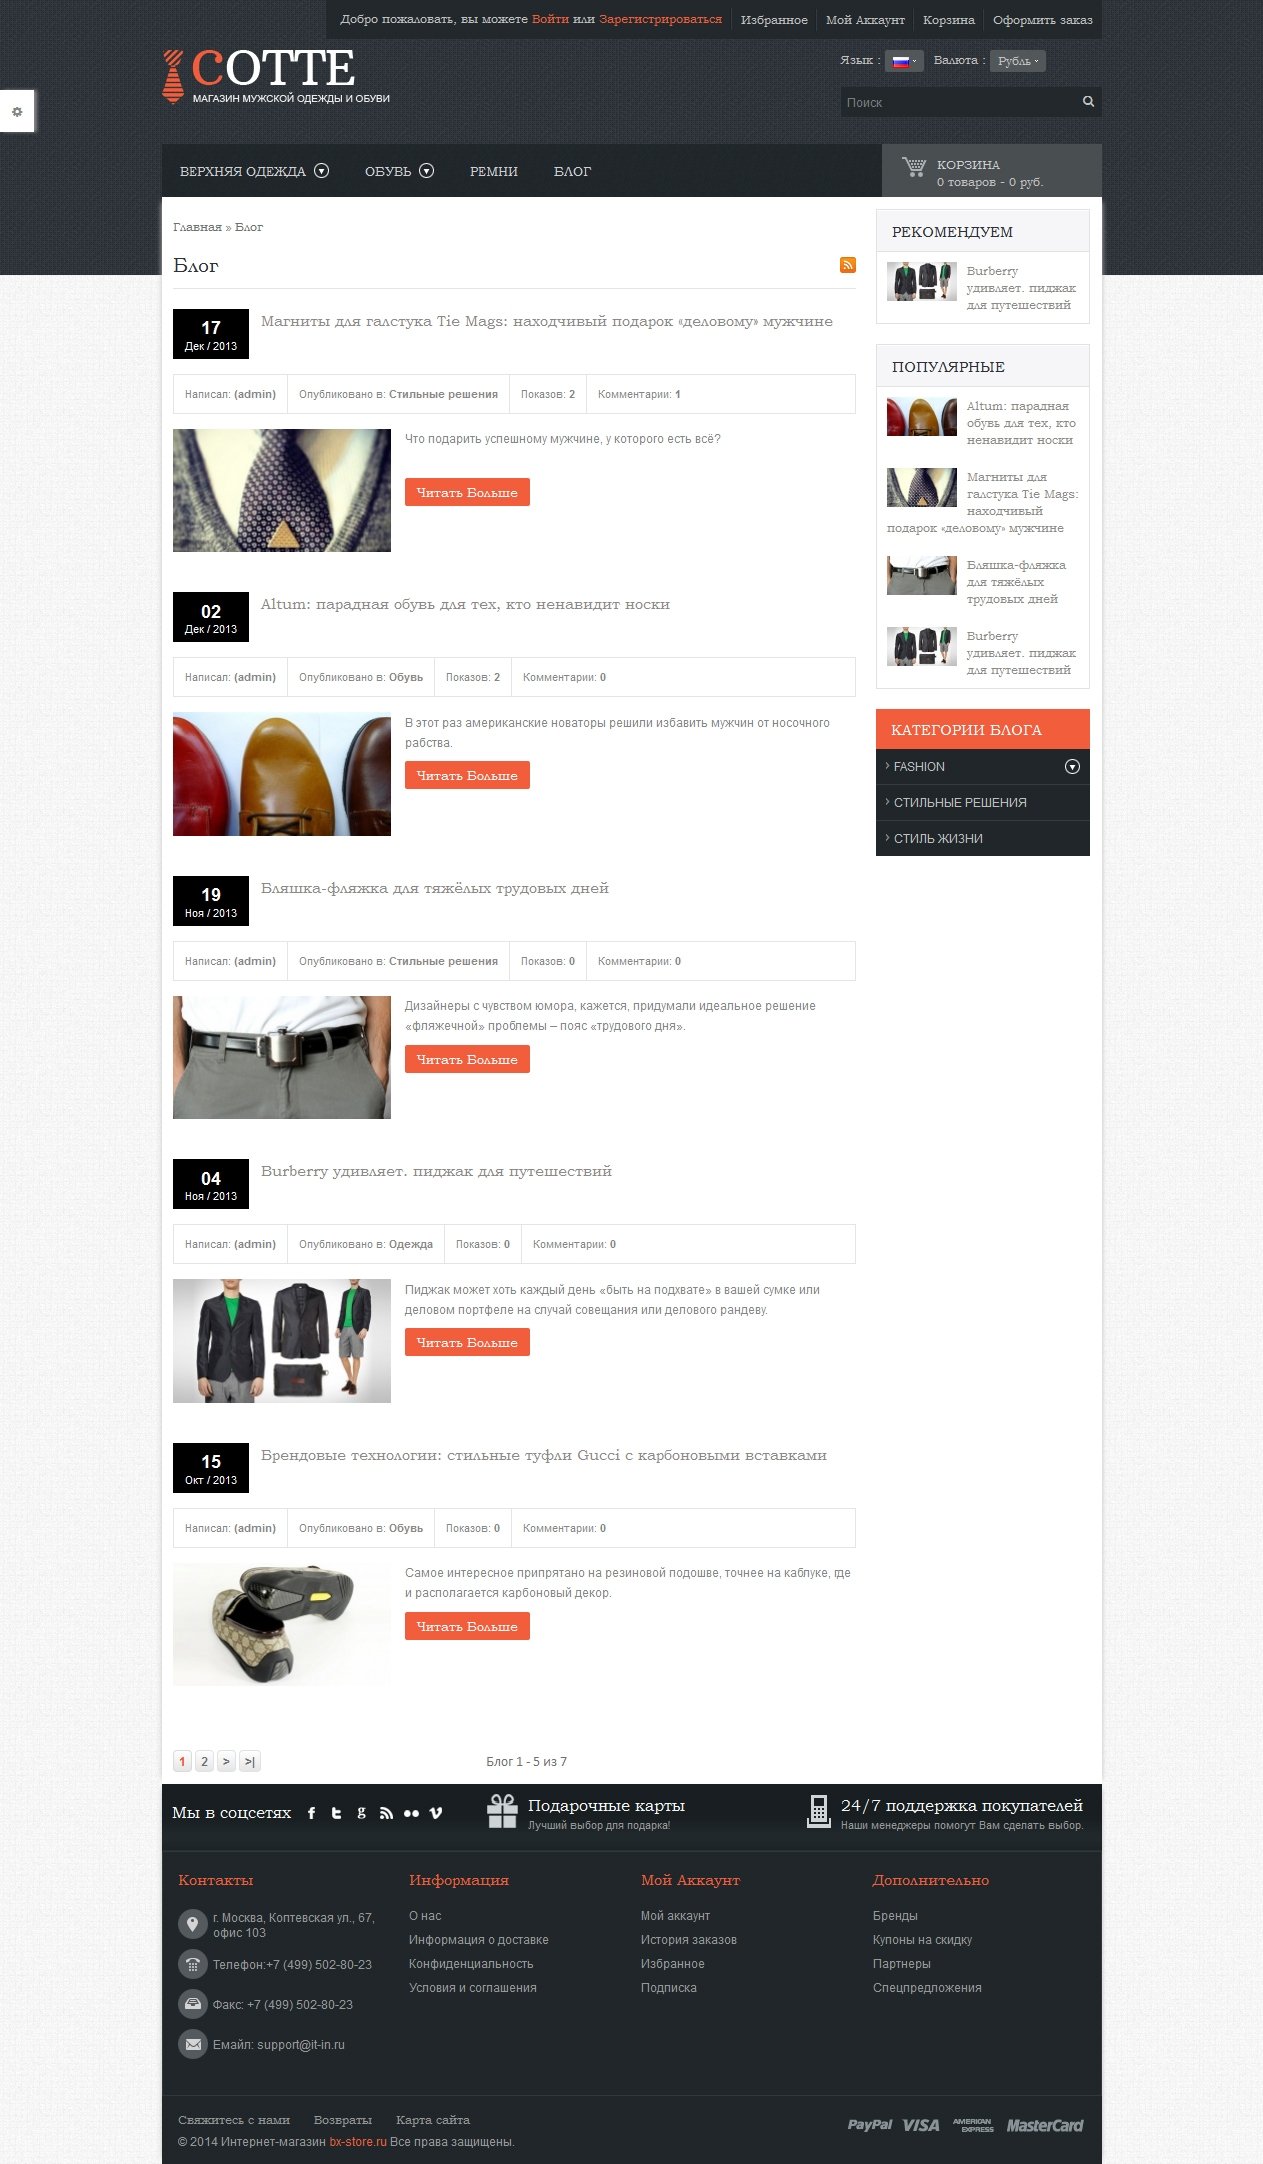 Готовый интернет-магазин - магазин одежды и обуви Cotte